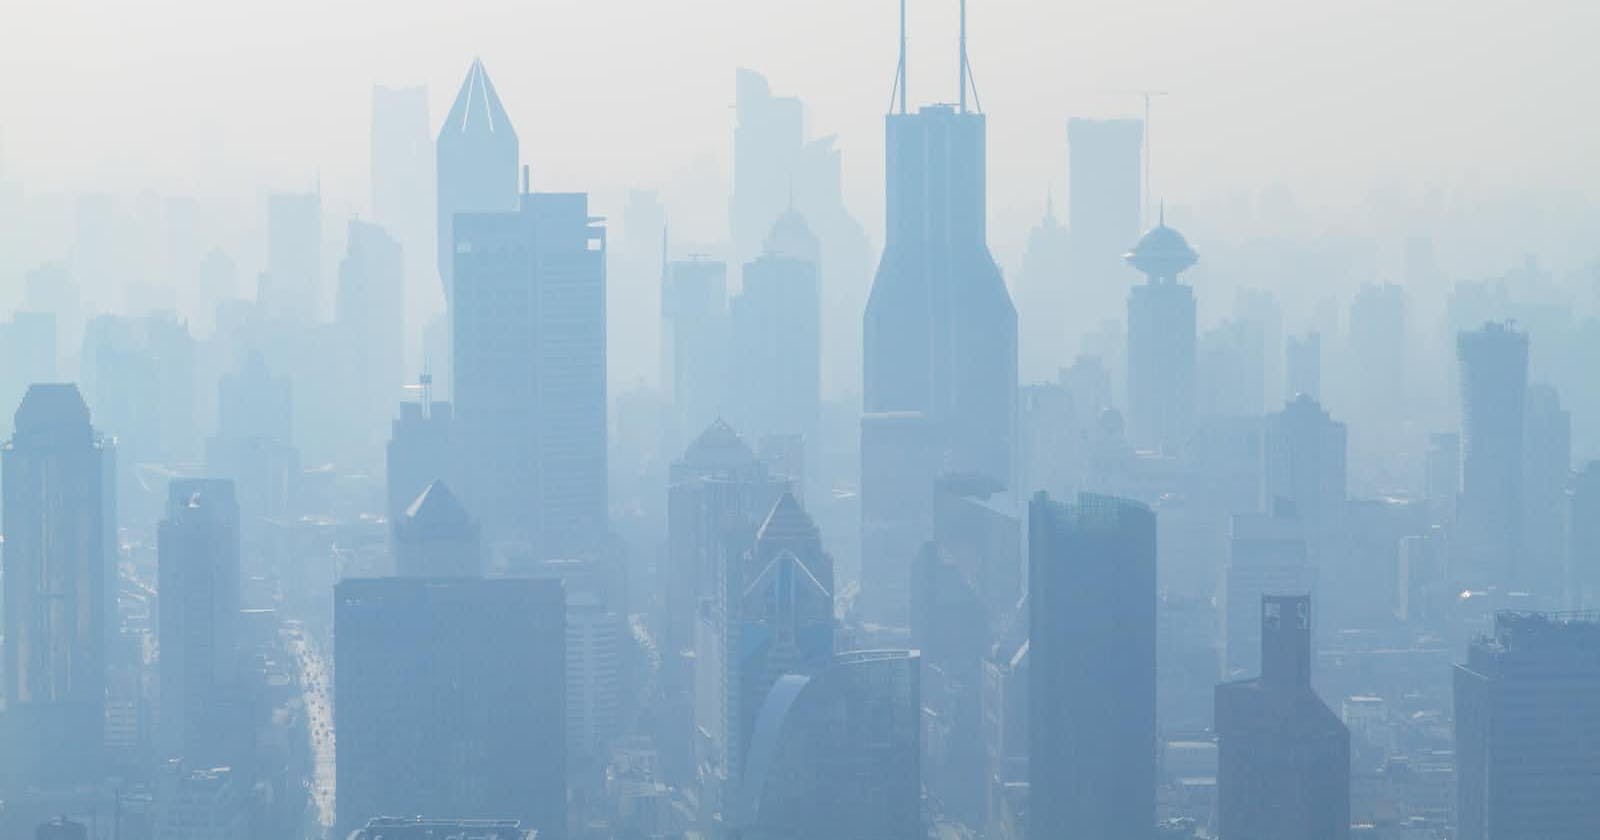 #01 Challenge | Delhi's Air Quality Data